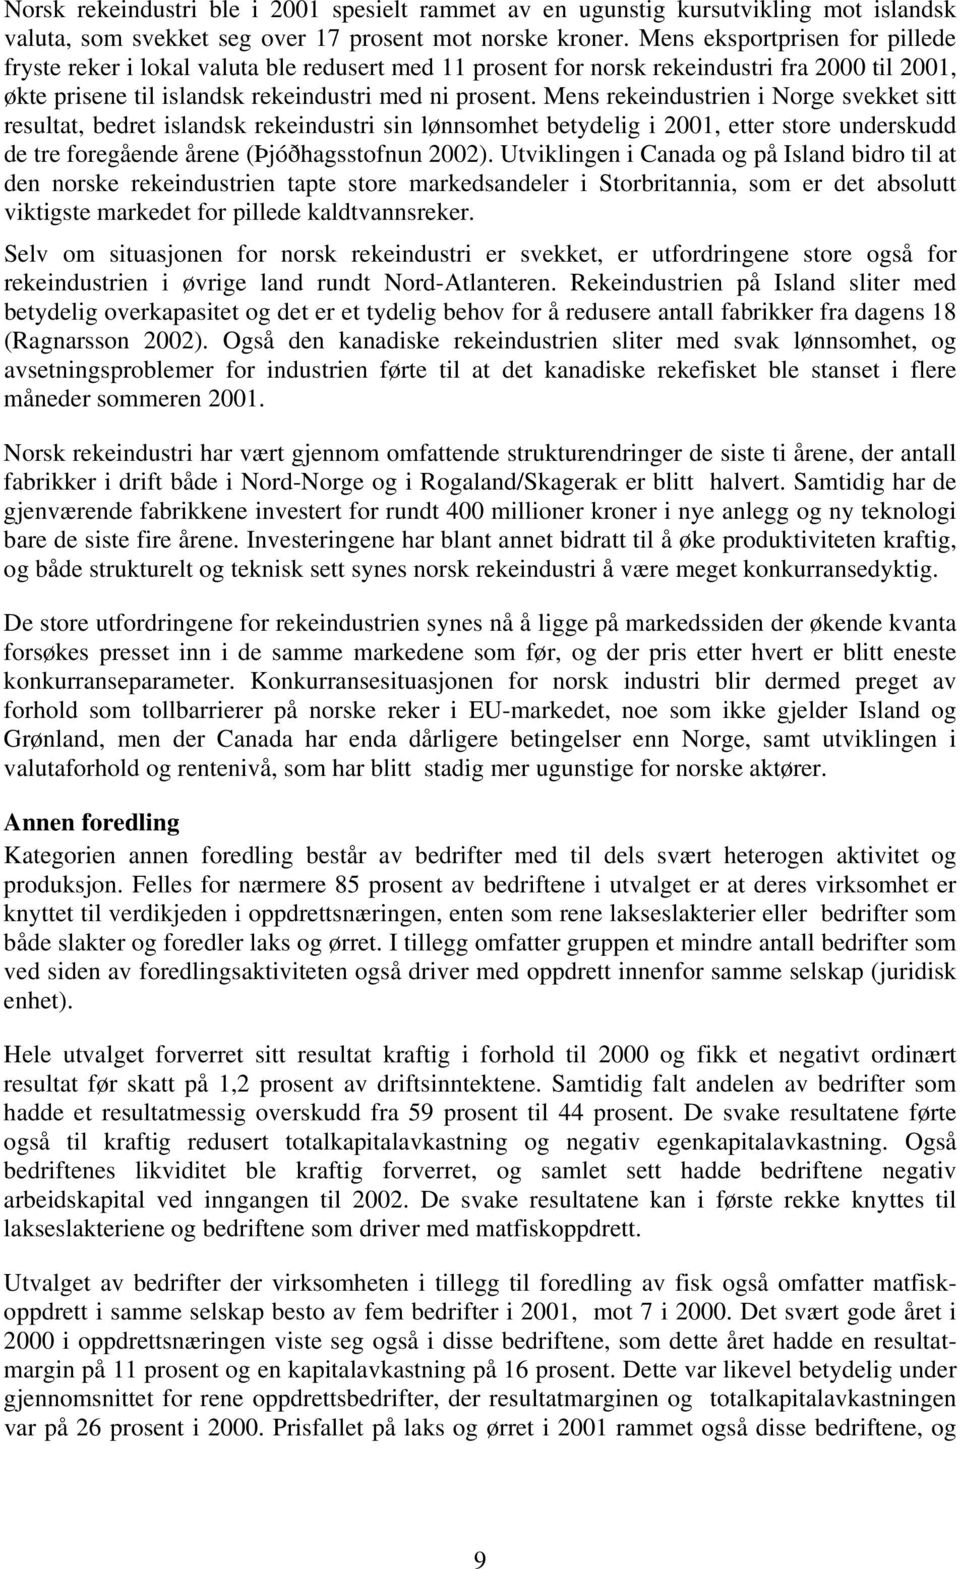 Mens rekeindustrien i Norge svekket sitt resultat, bedret islandsk rekeindustri sin lønnsomhet betydelig i 2001, etter store underskudd de tre foregående årene (Þjóðhagsstofnun 2002).